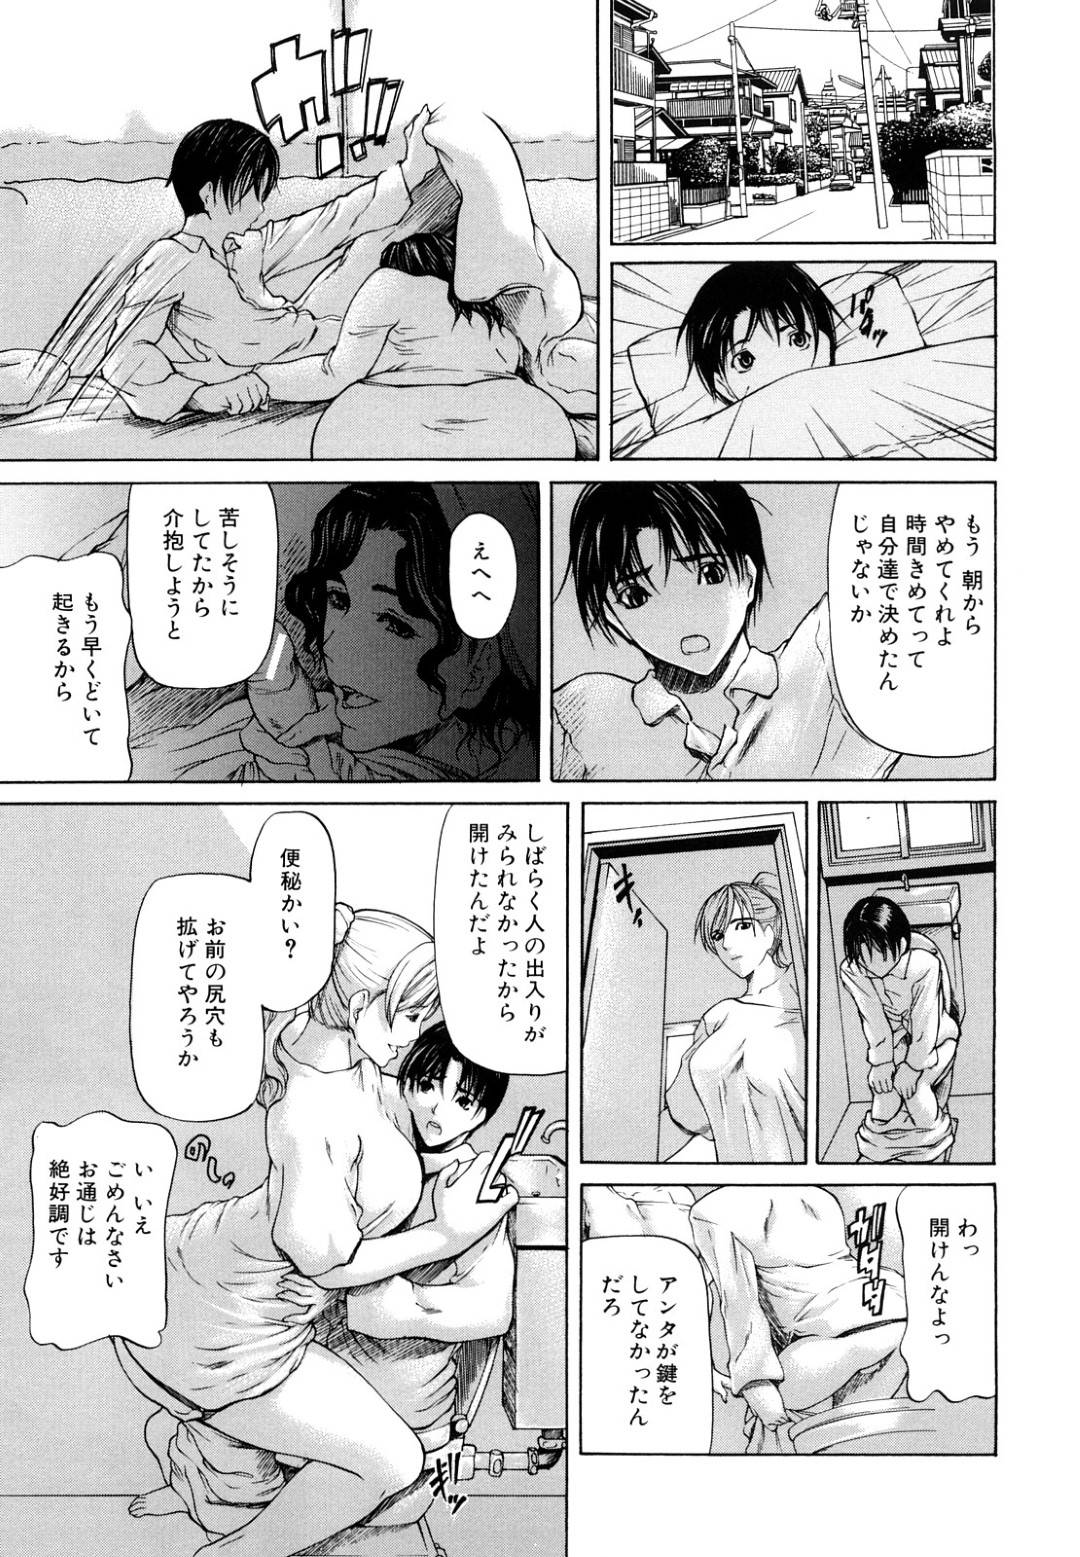 【エロ漫画】母と姉とセックスしまくる少年は、玄関で母にフェラされ、姉と風呂場でアナルセックスする…【四島由紀夫】